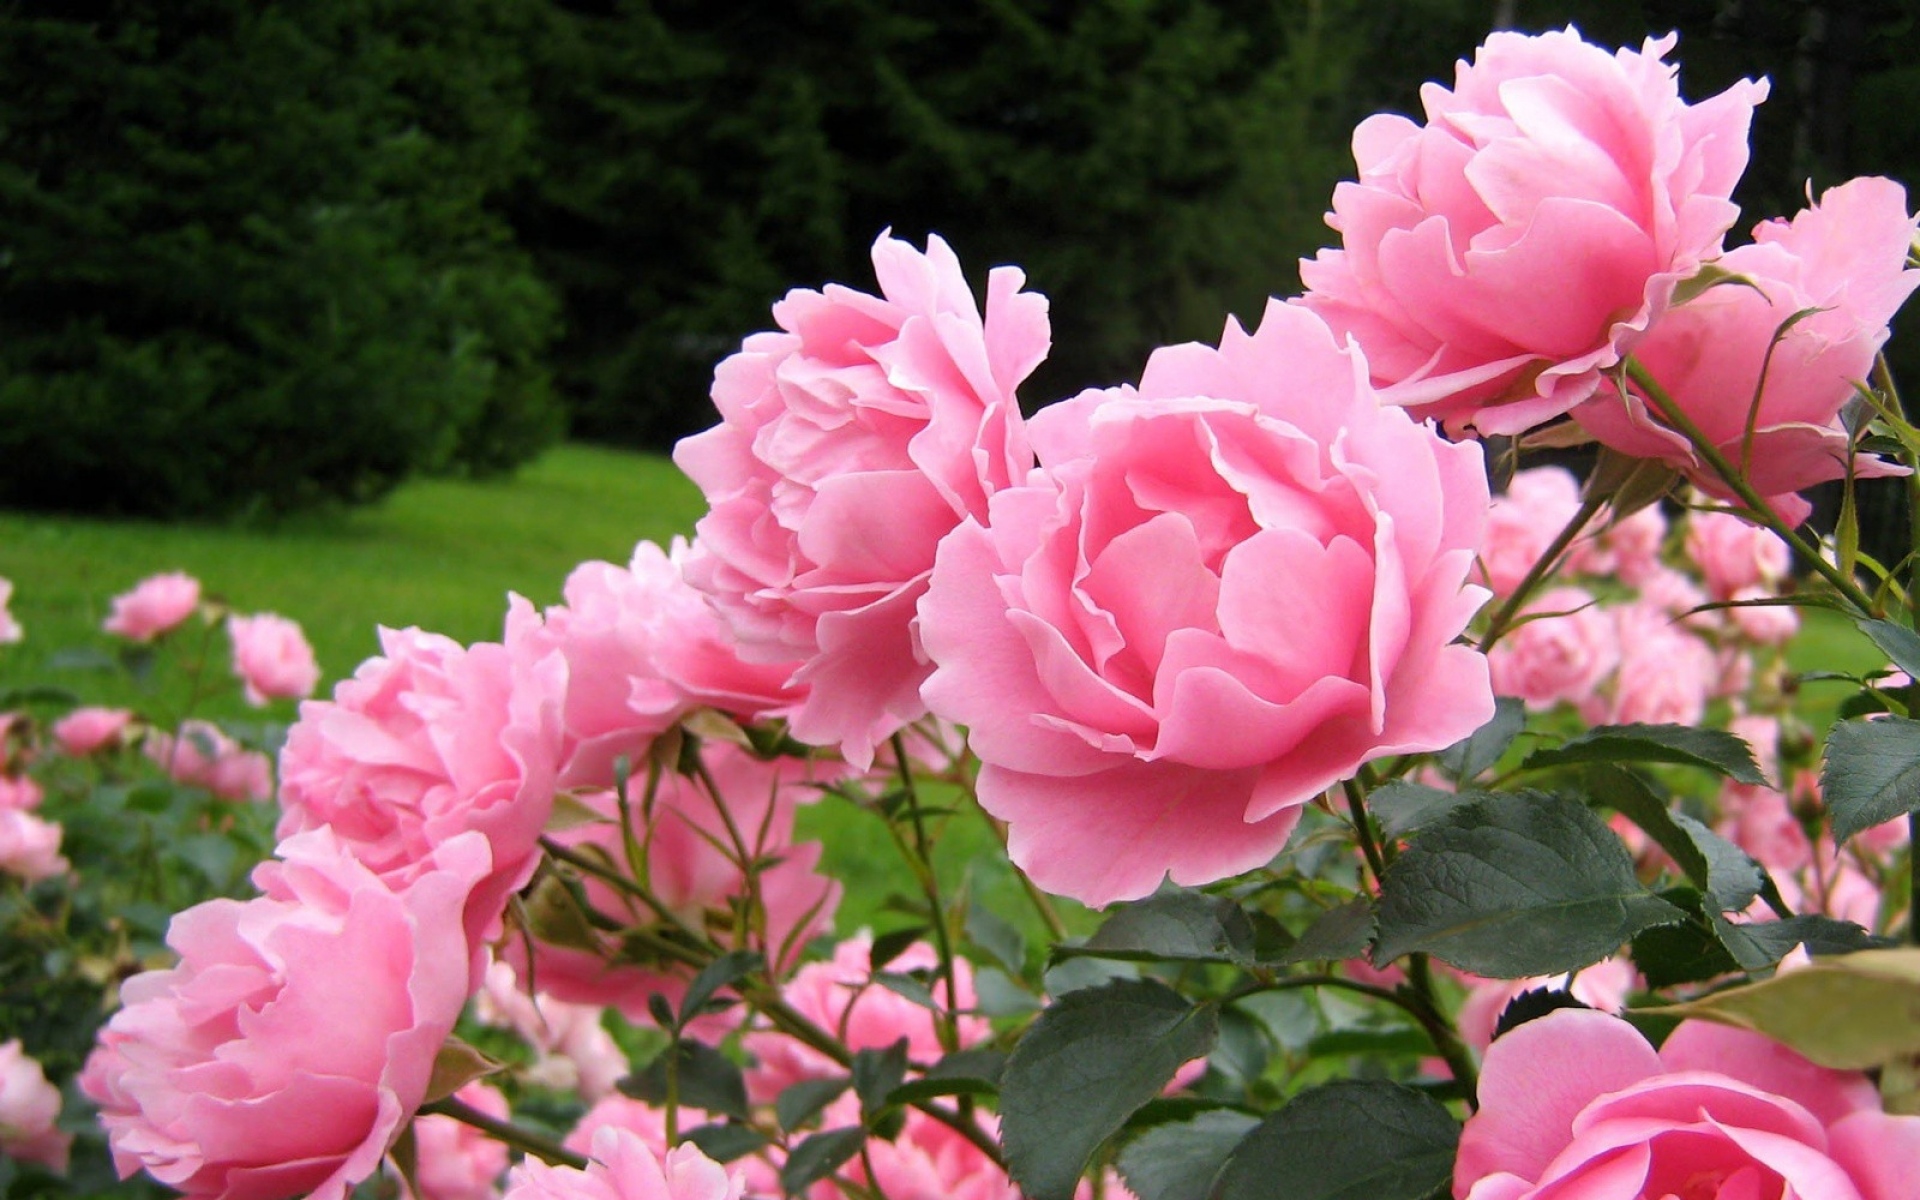 Роза Садовая кустовая мелкоцветковая